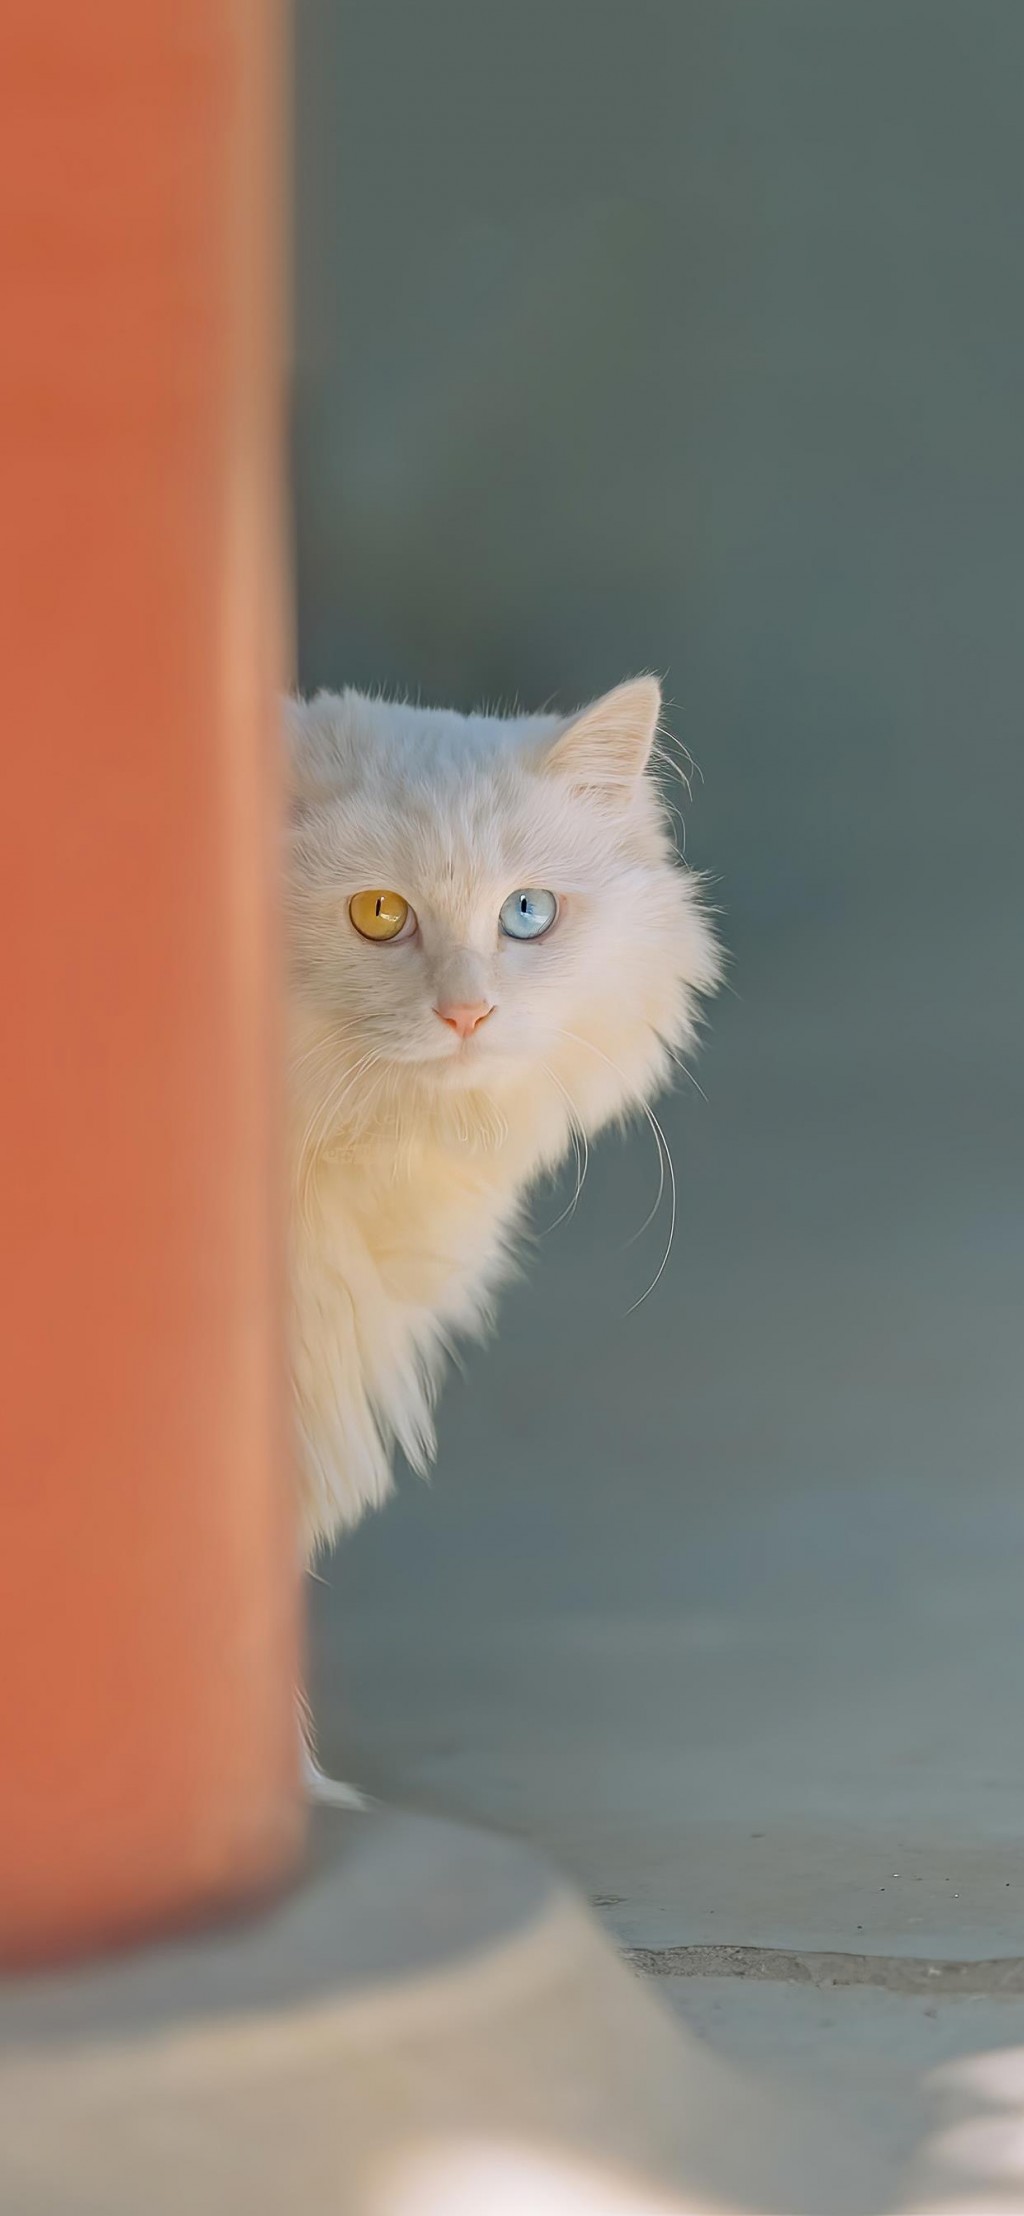 双瞳色的猫咪摄影手机壁纸